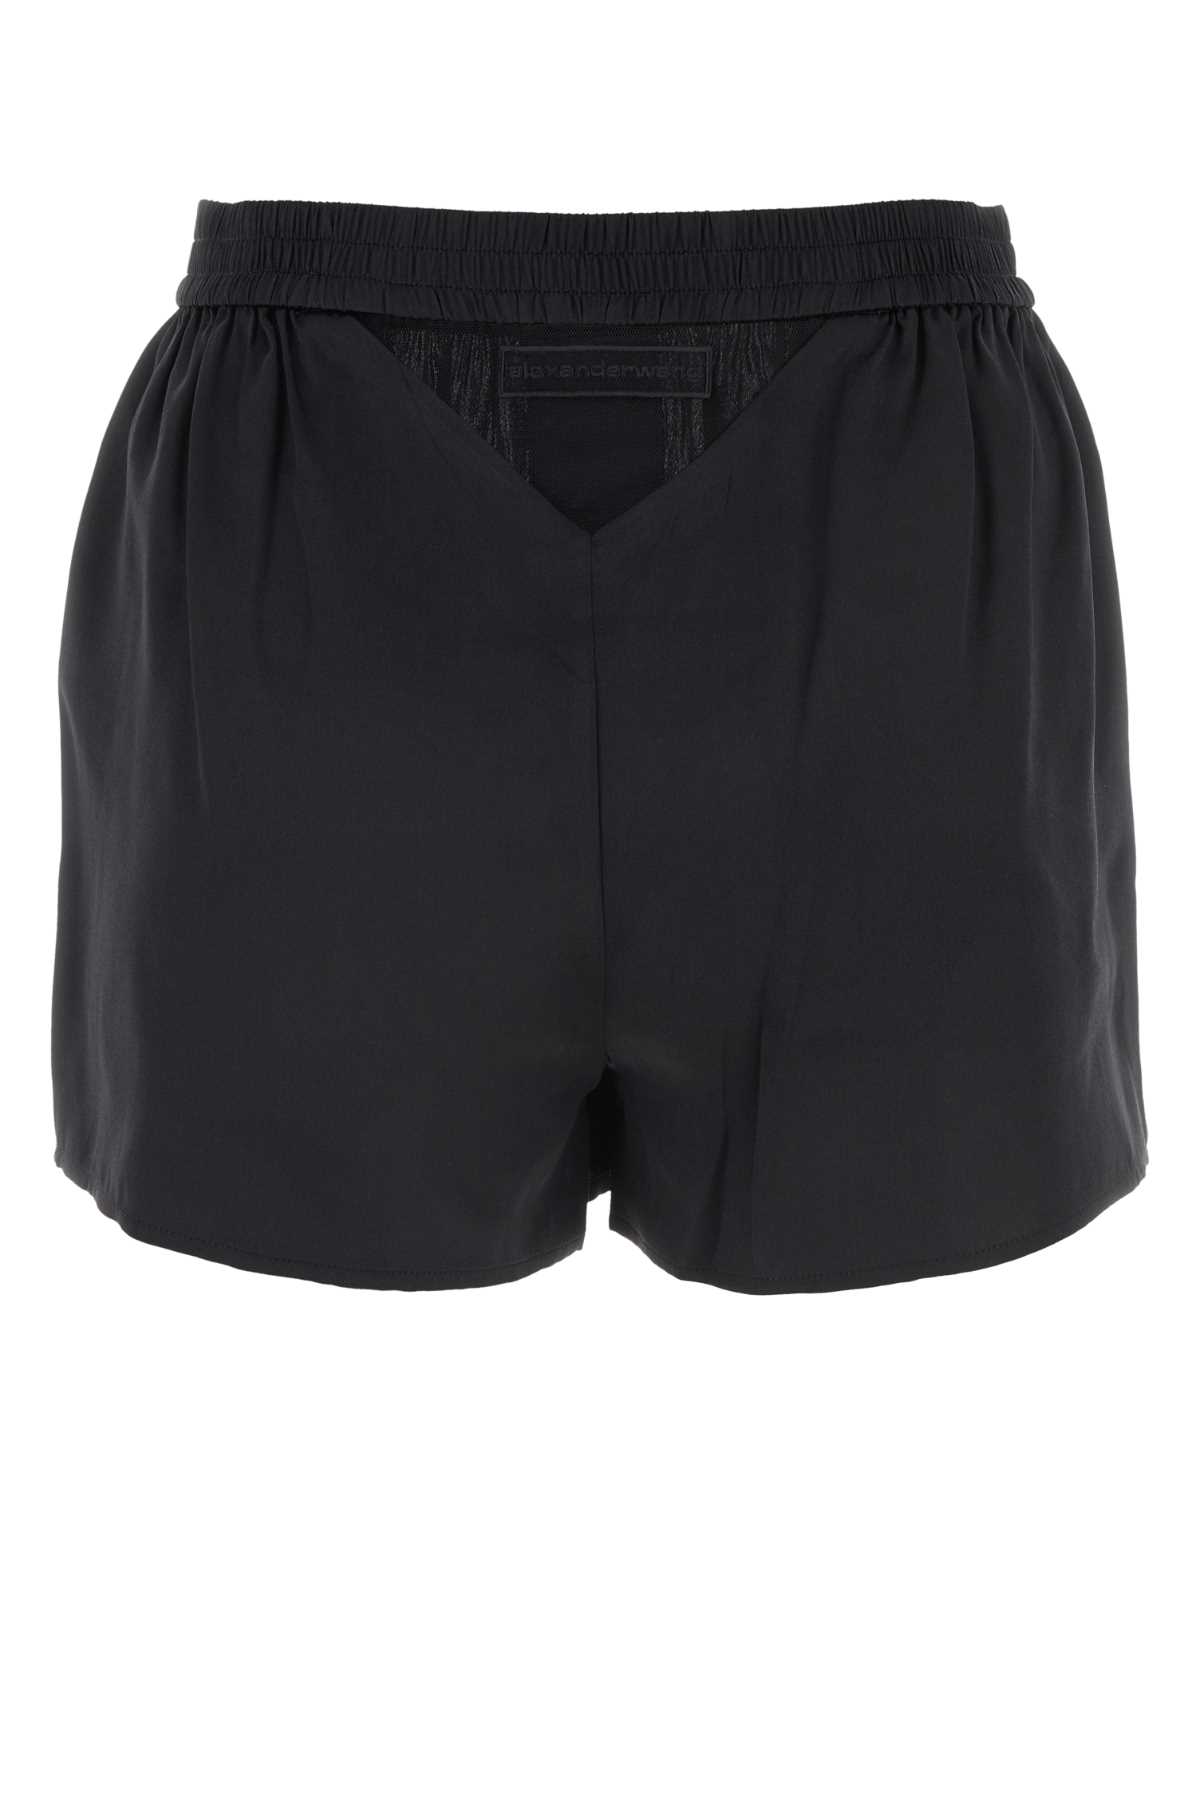 Shop Alexander Wang Black Satin Shorts